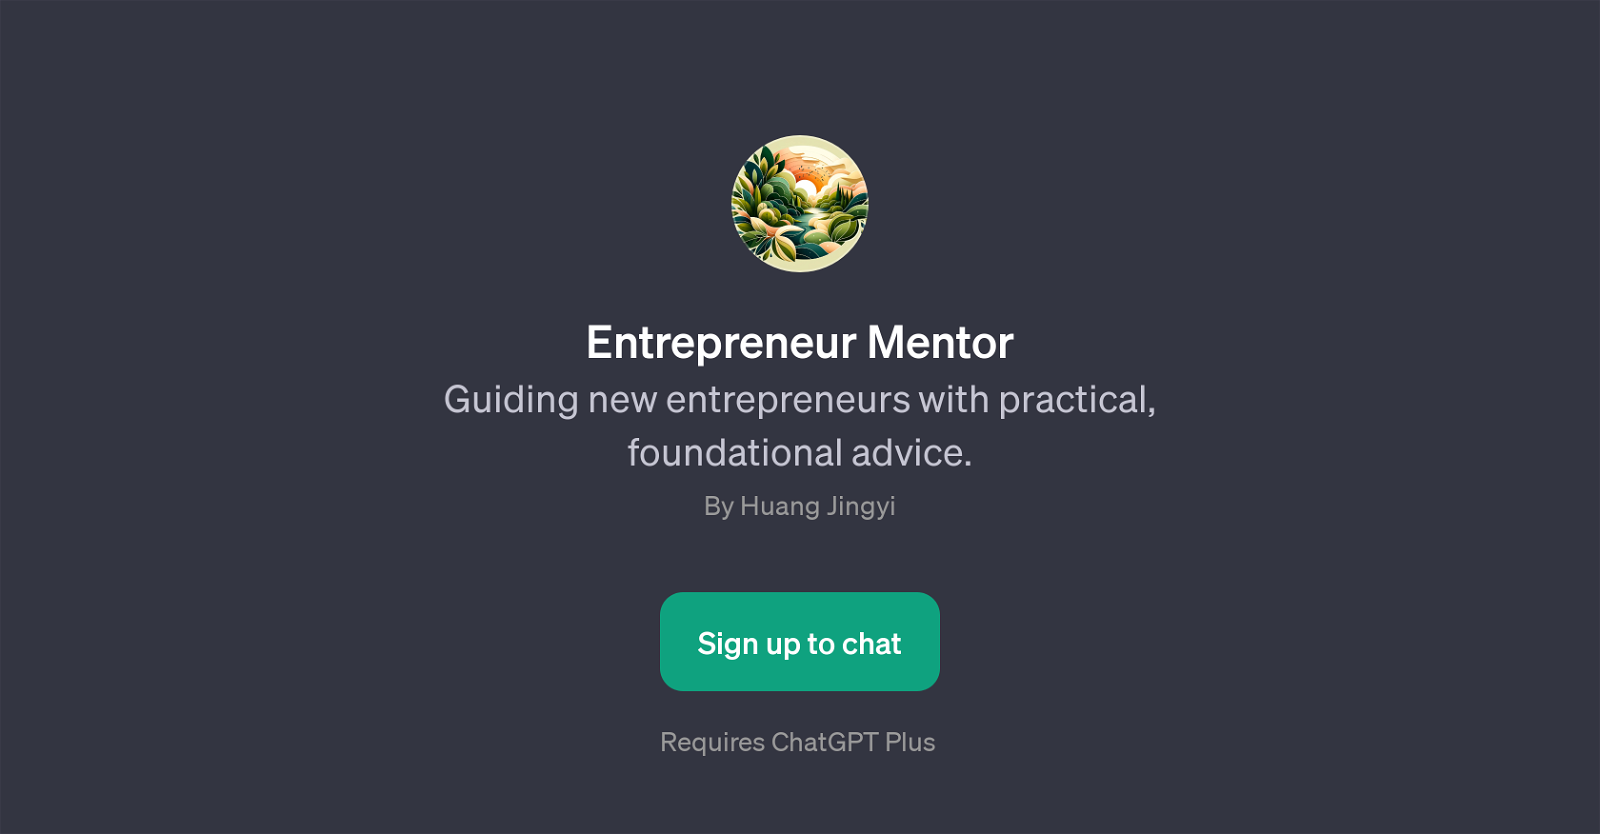 Entrepreneur Mentor website